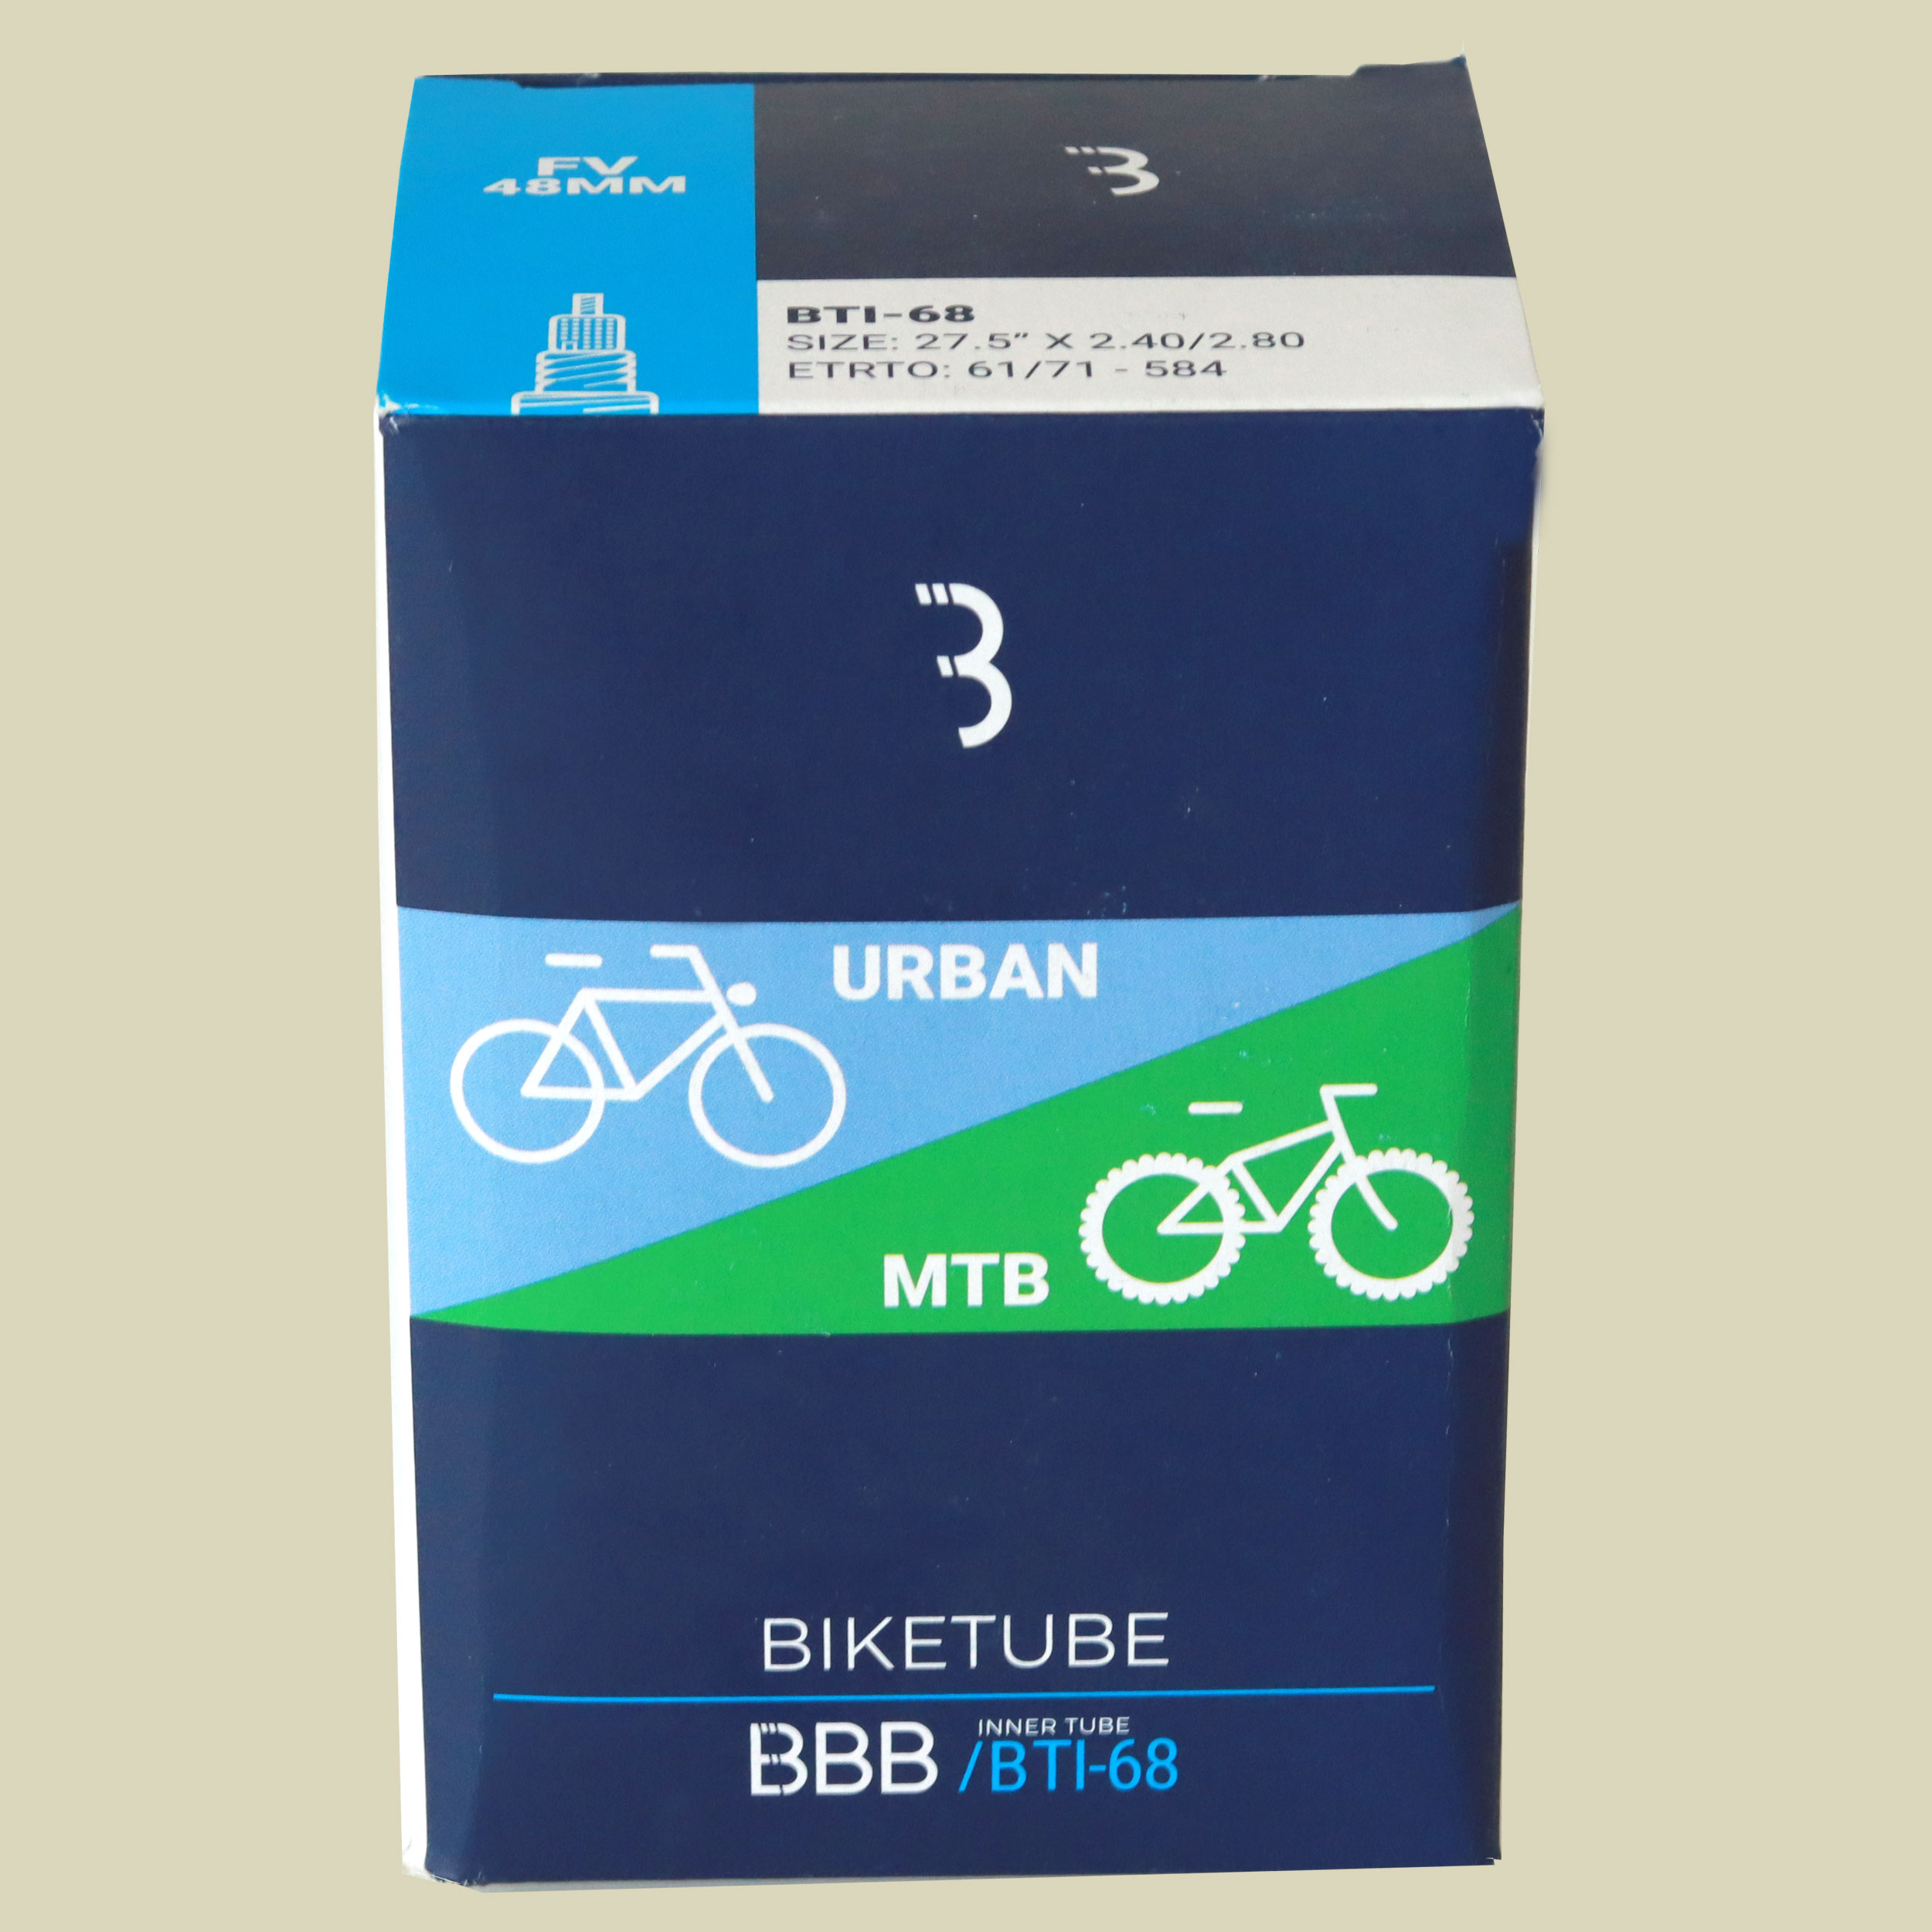 BTI-68 BikeTube 27,5  FV 27.5" x 2.40/2.80